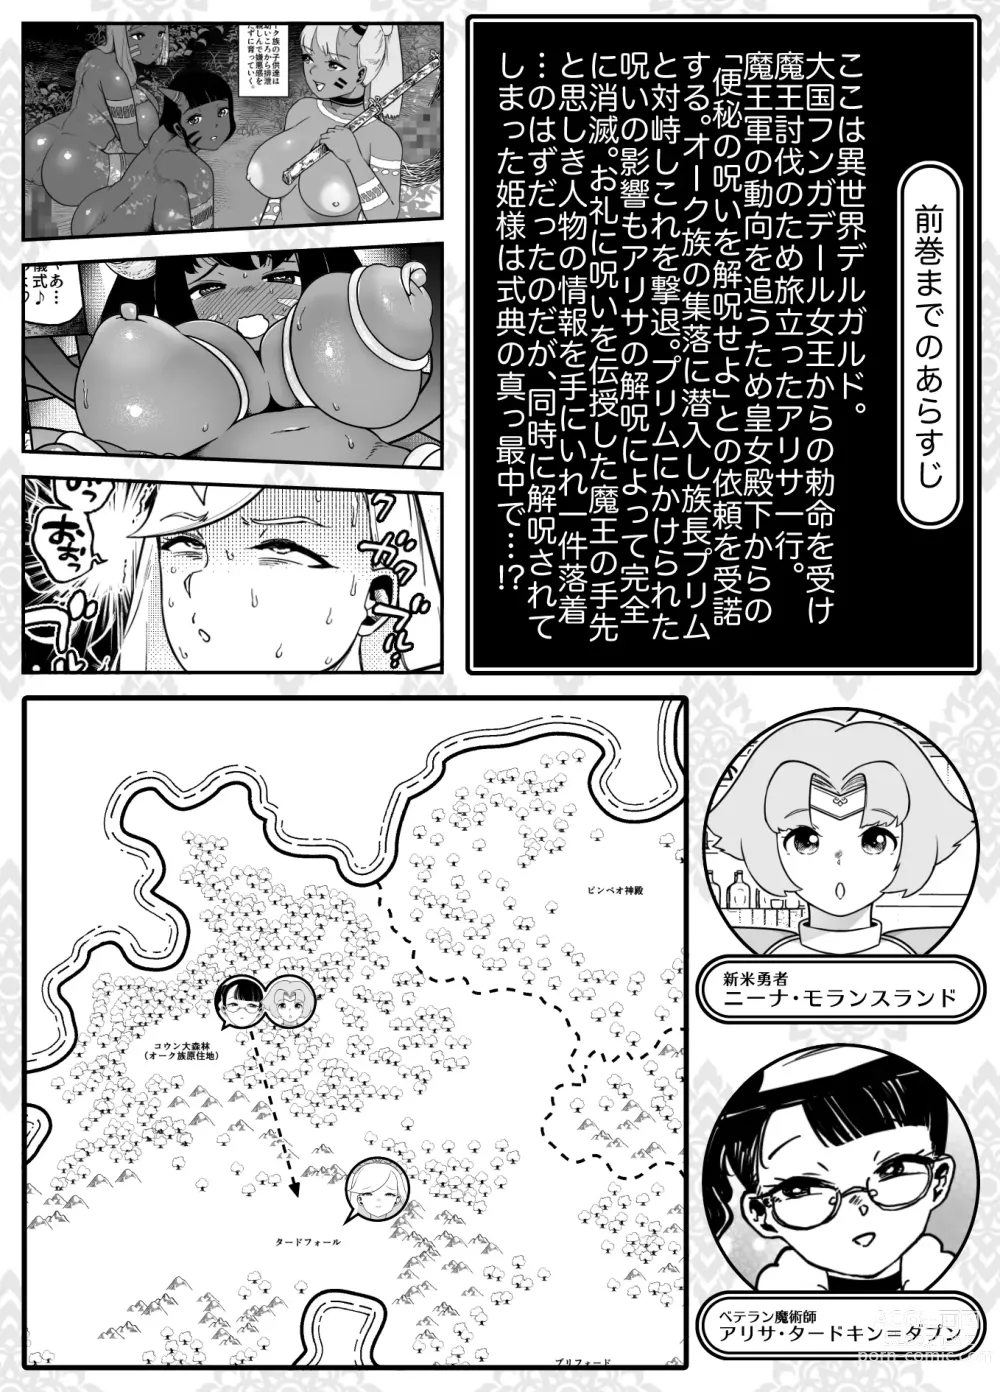 Page 2 of doujinshi Kaiben Manyuutan Unmorasu III